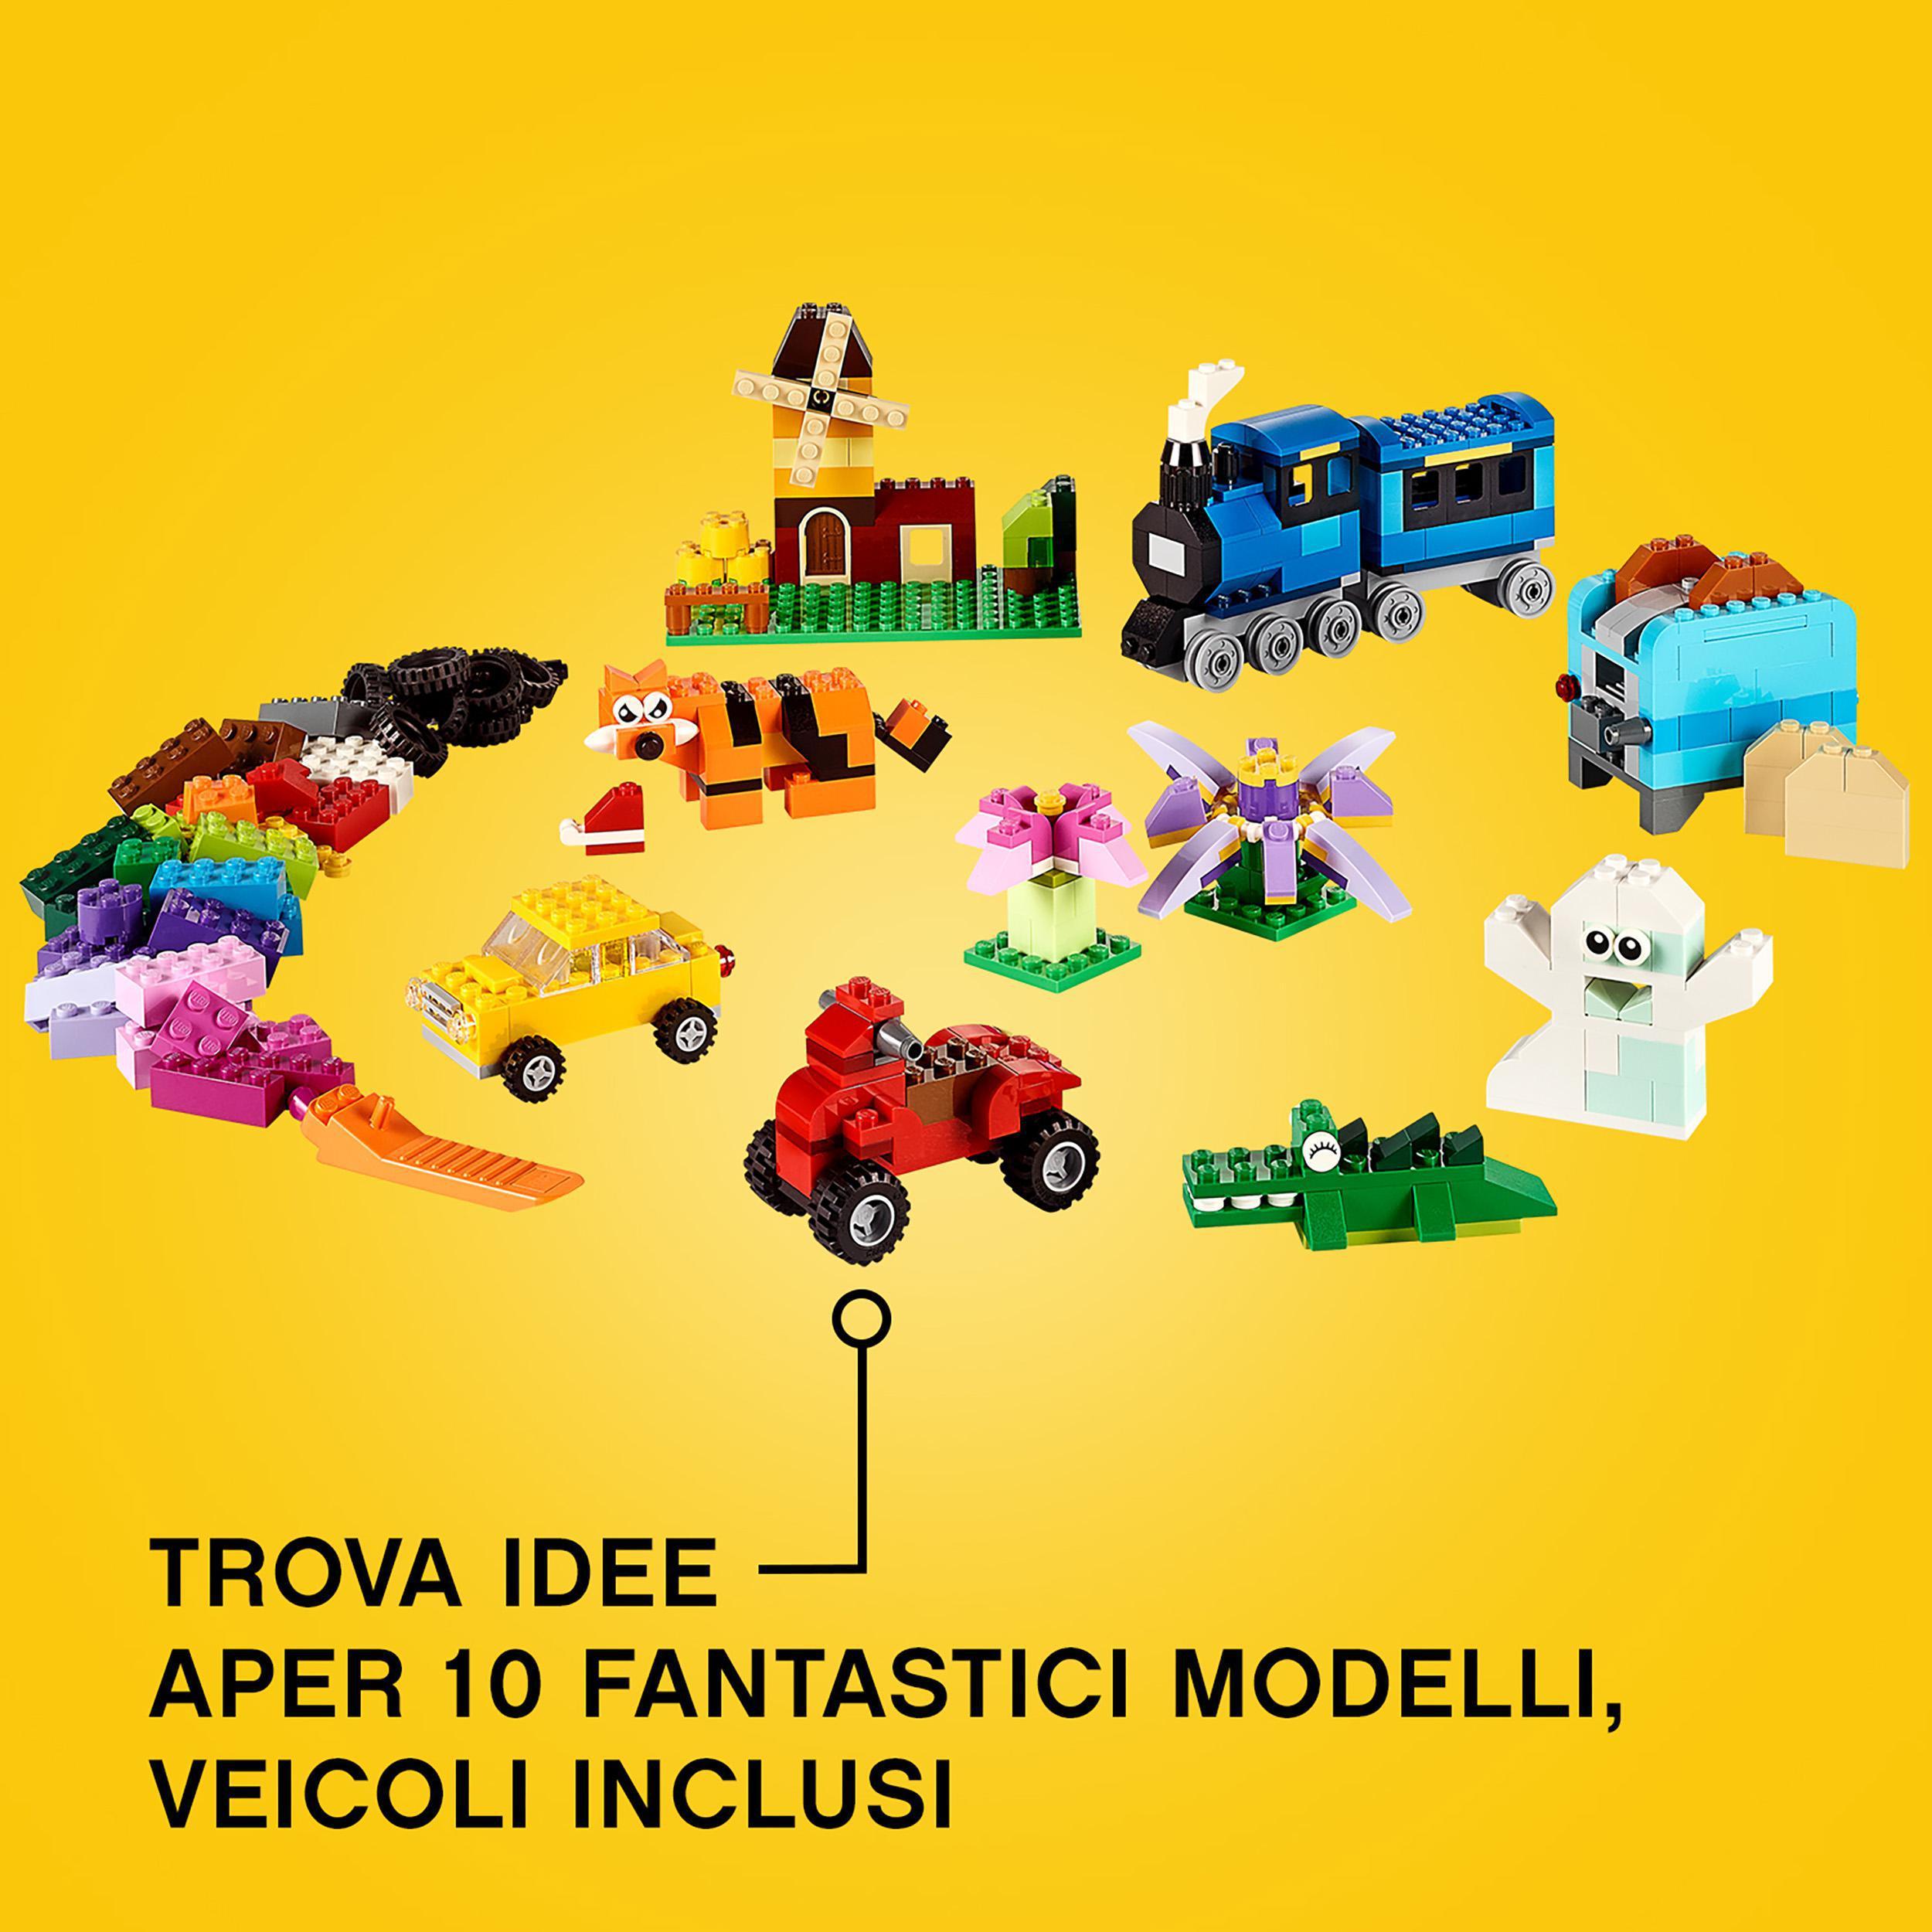 Lego classic 10696 scatola mattoncini creativi media, contenitore per costruire fiori, macchina, treno e aereo giocattolo - LEGO CLASSIC